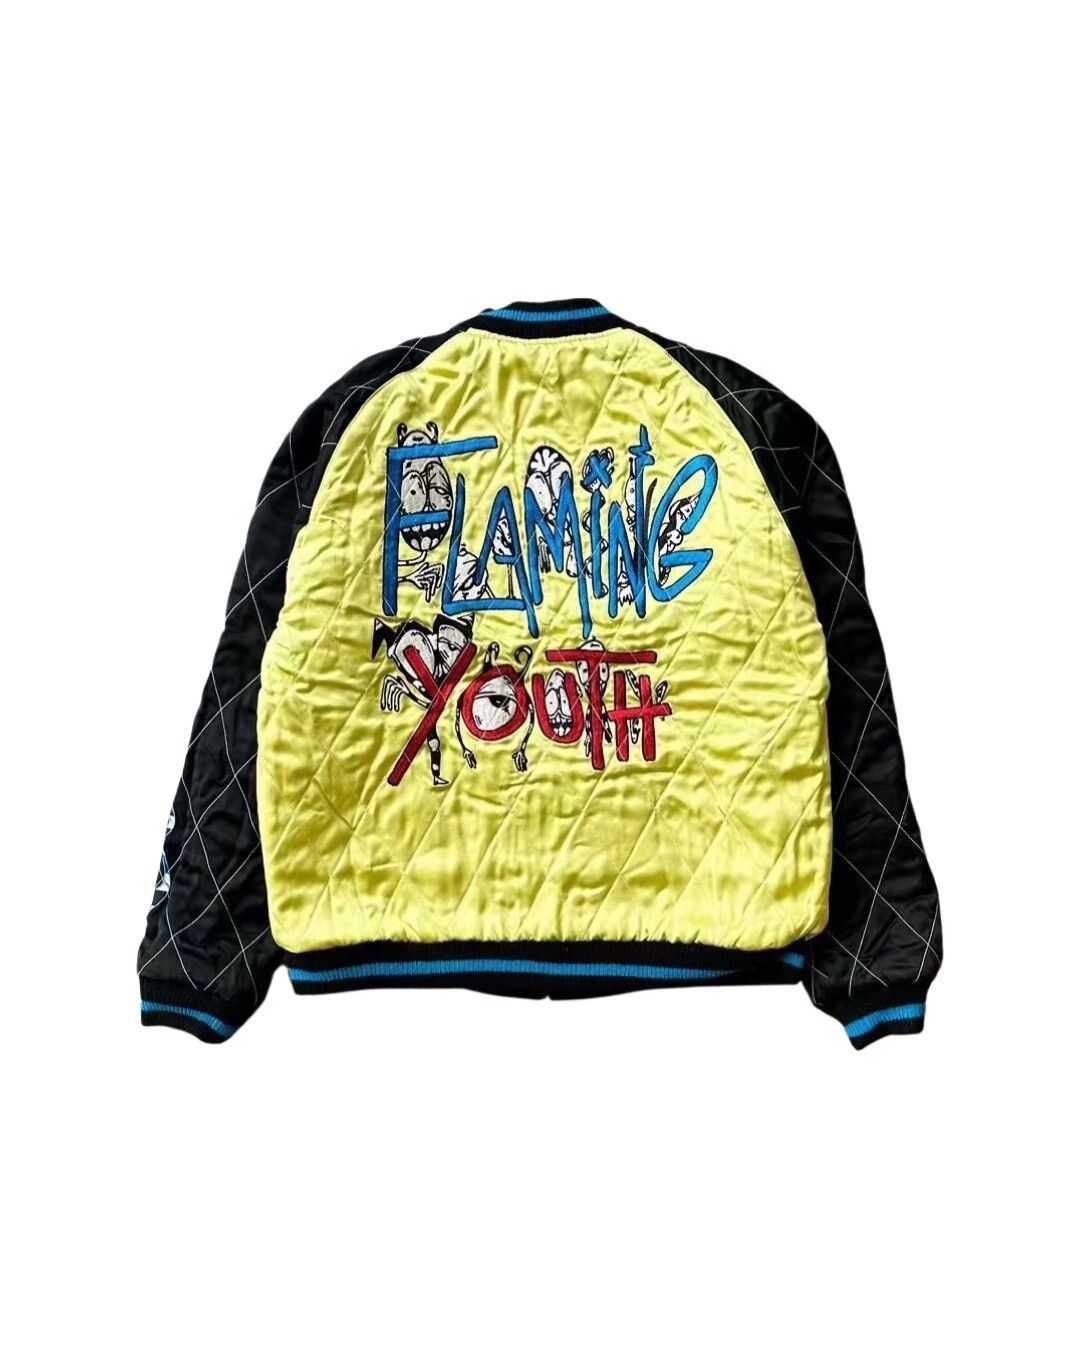 Matty boy flaming youth reversible souvenir jacket - 2